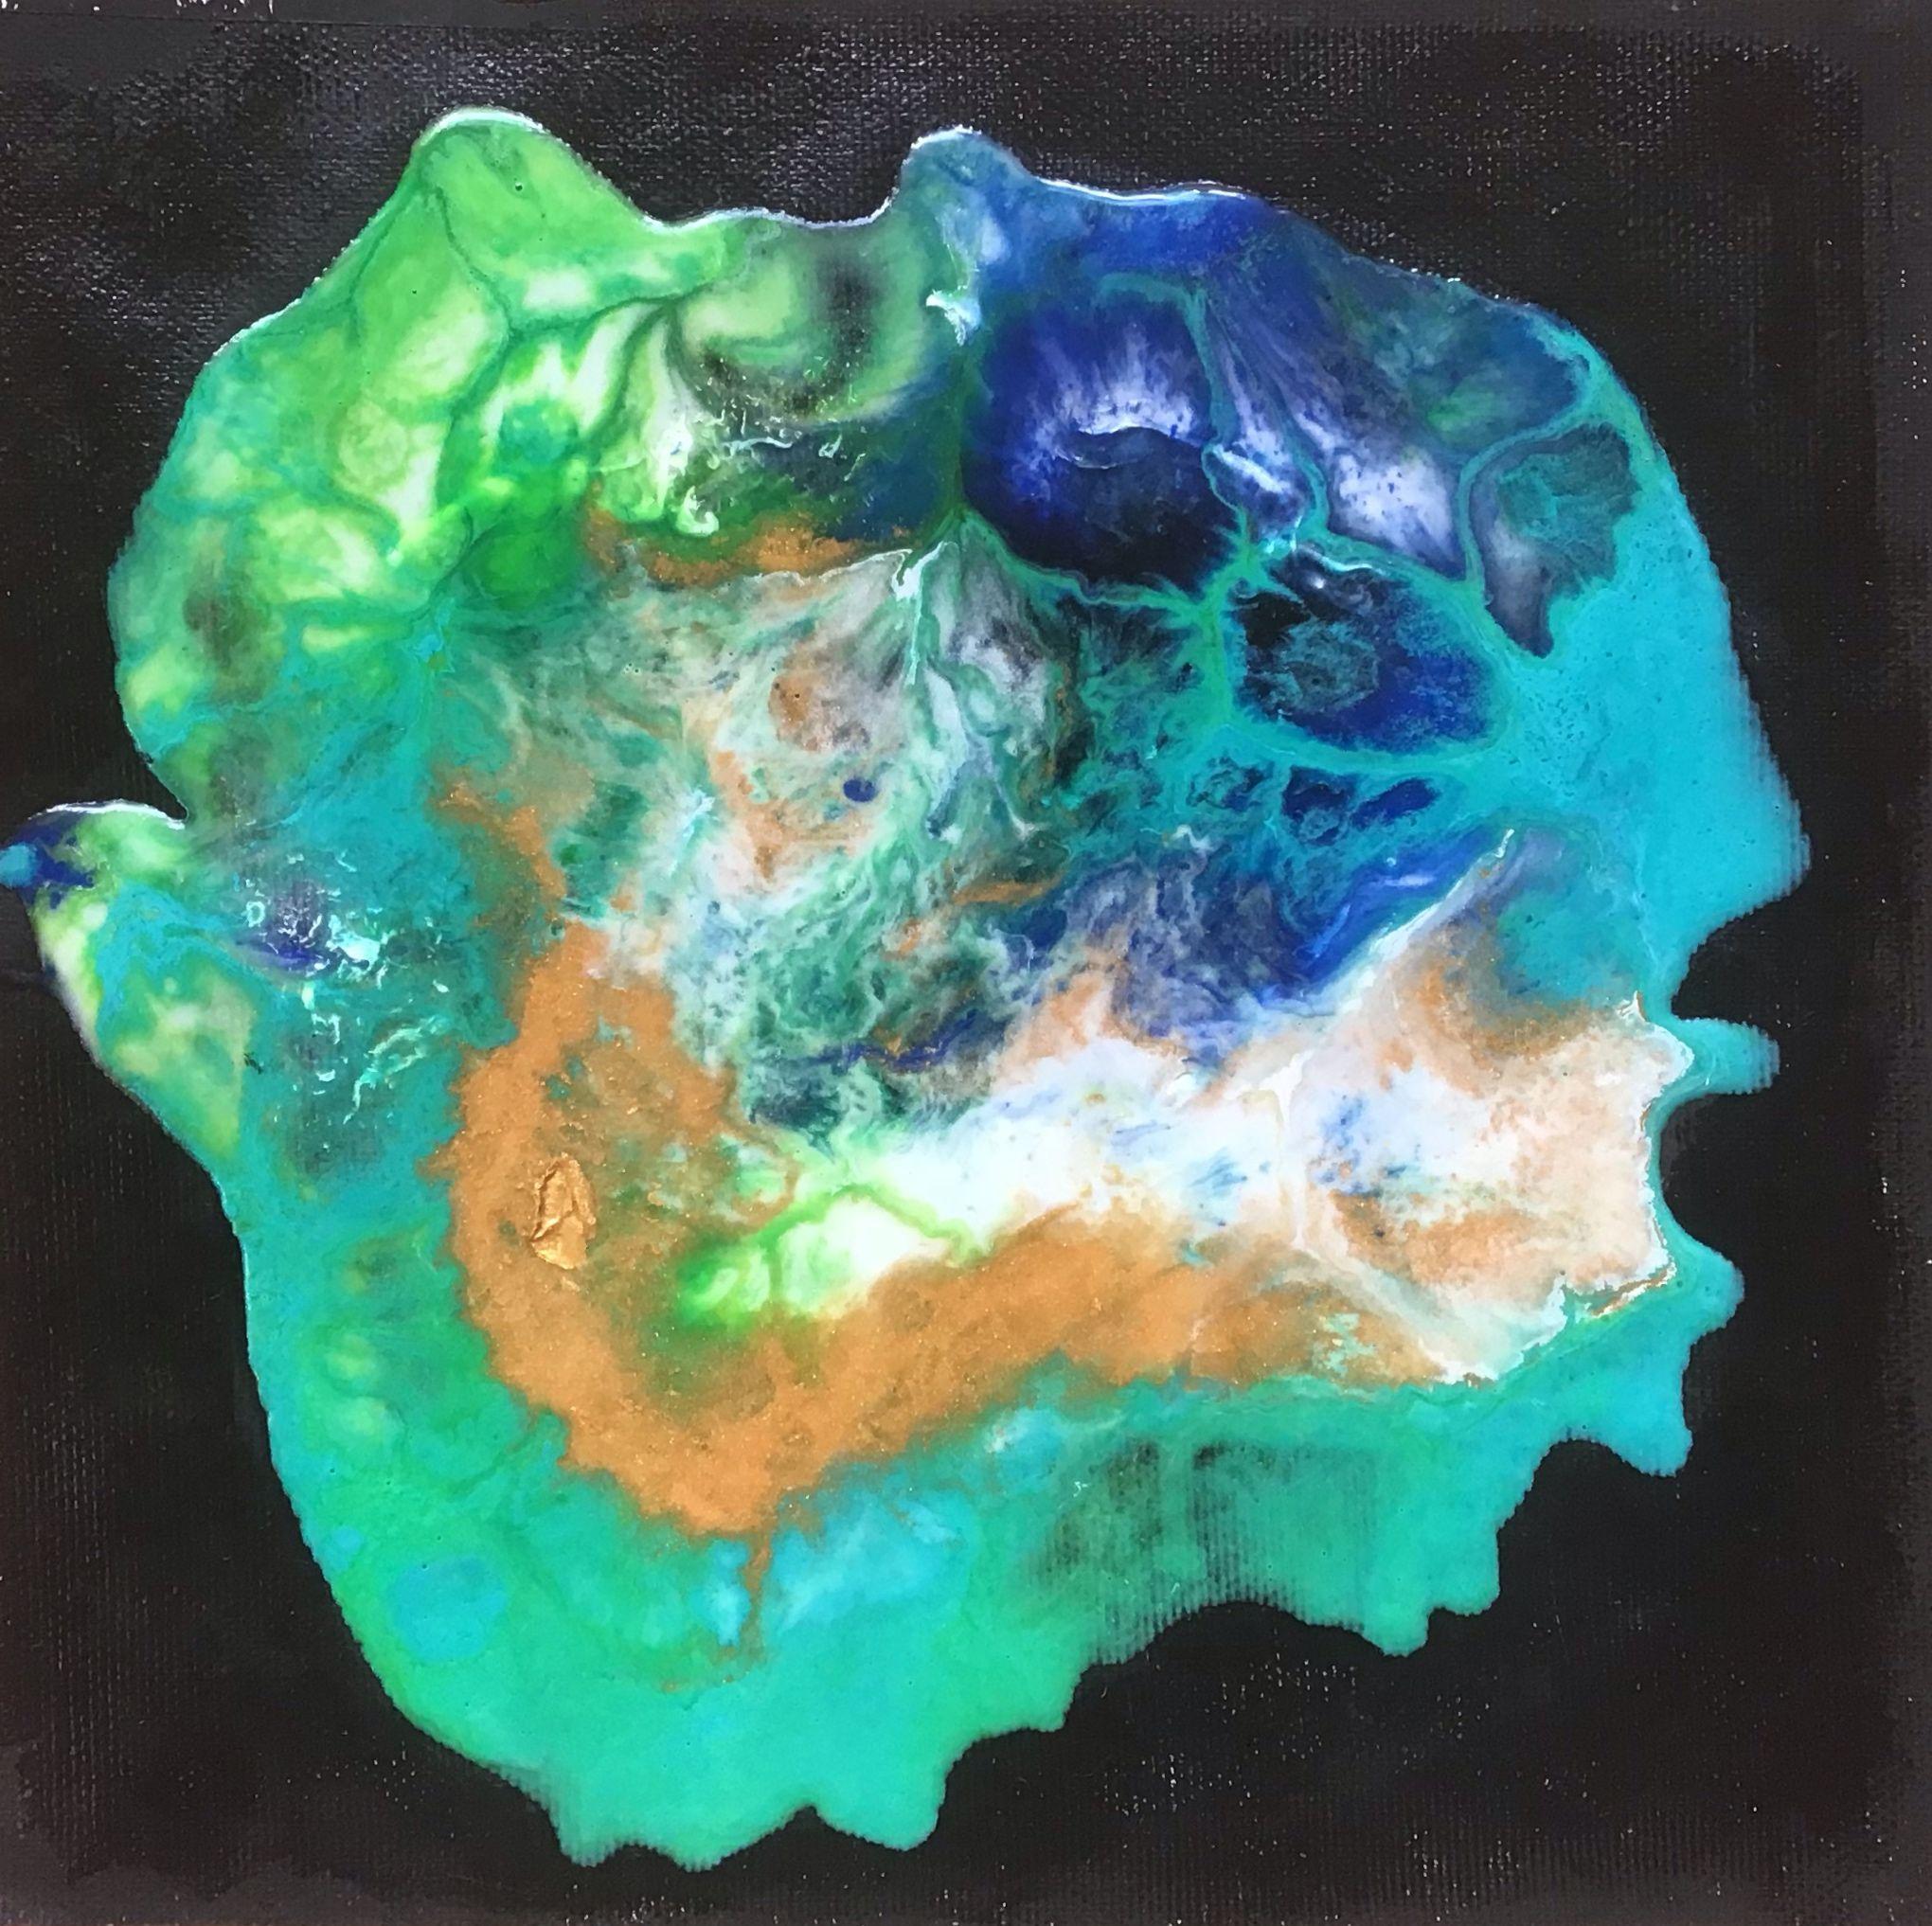 Lagoon Nebula /Mini #2, Mixed Media on Canvas - Abstract Mixed Media Art by Maria Bacha